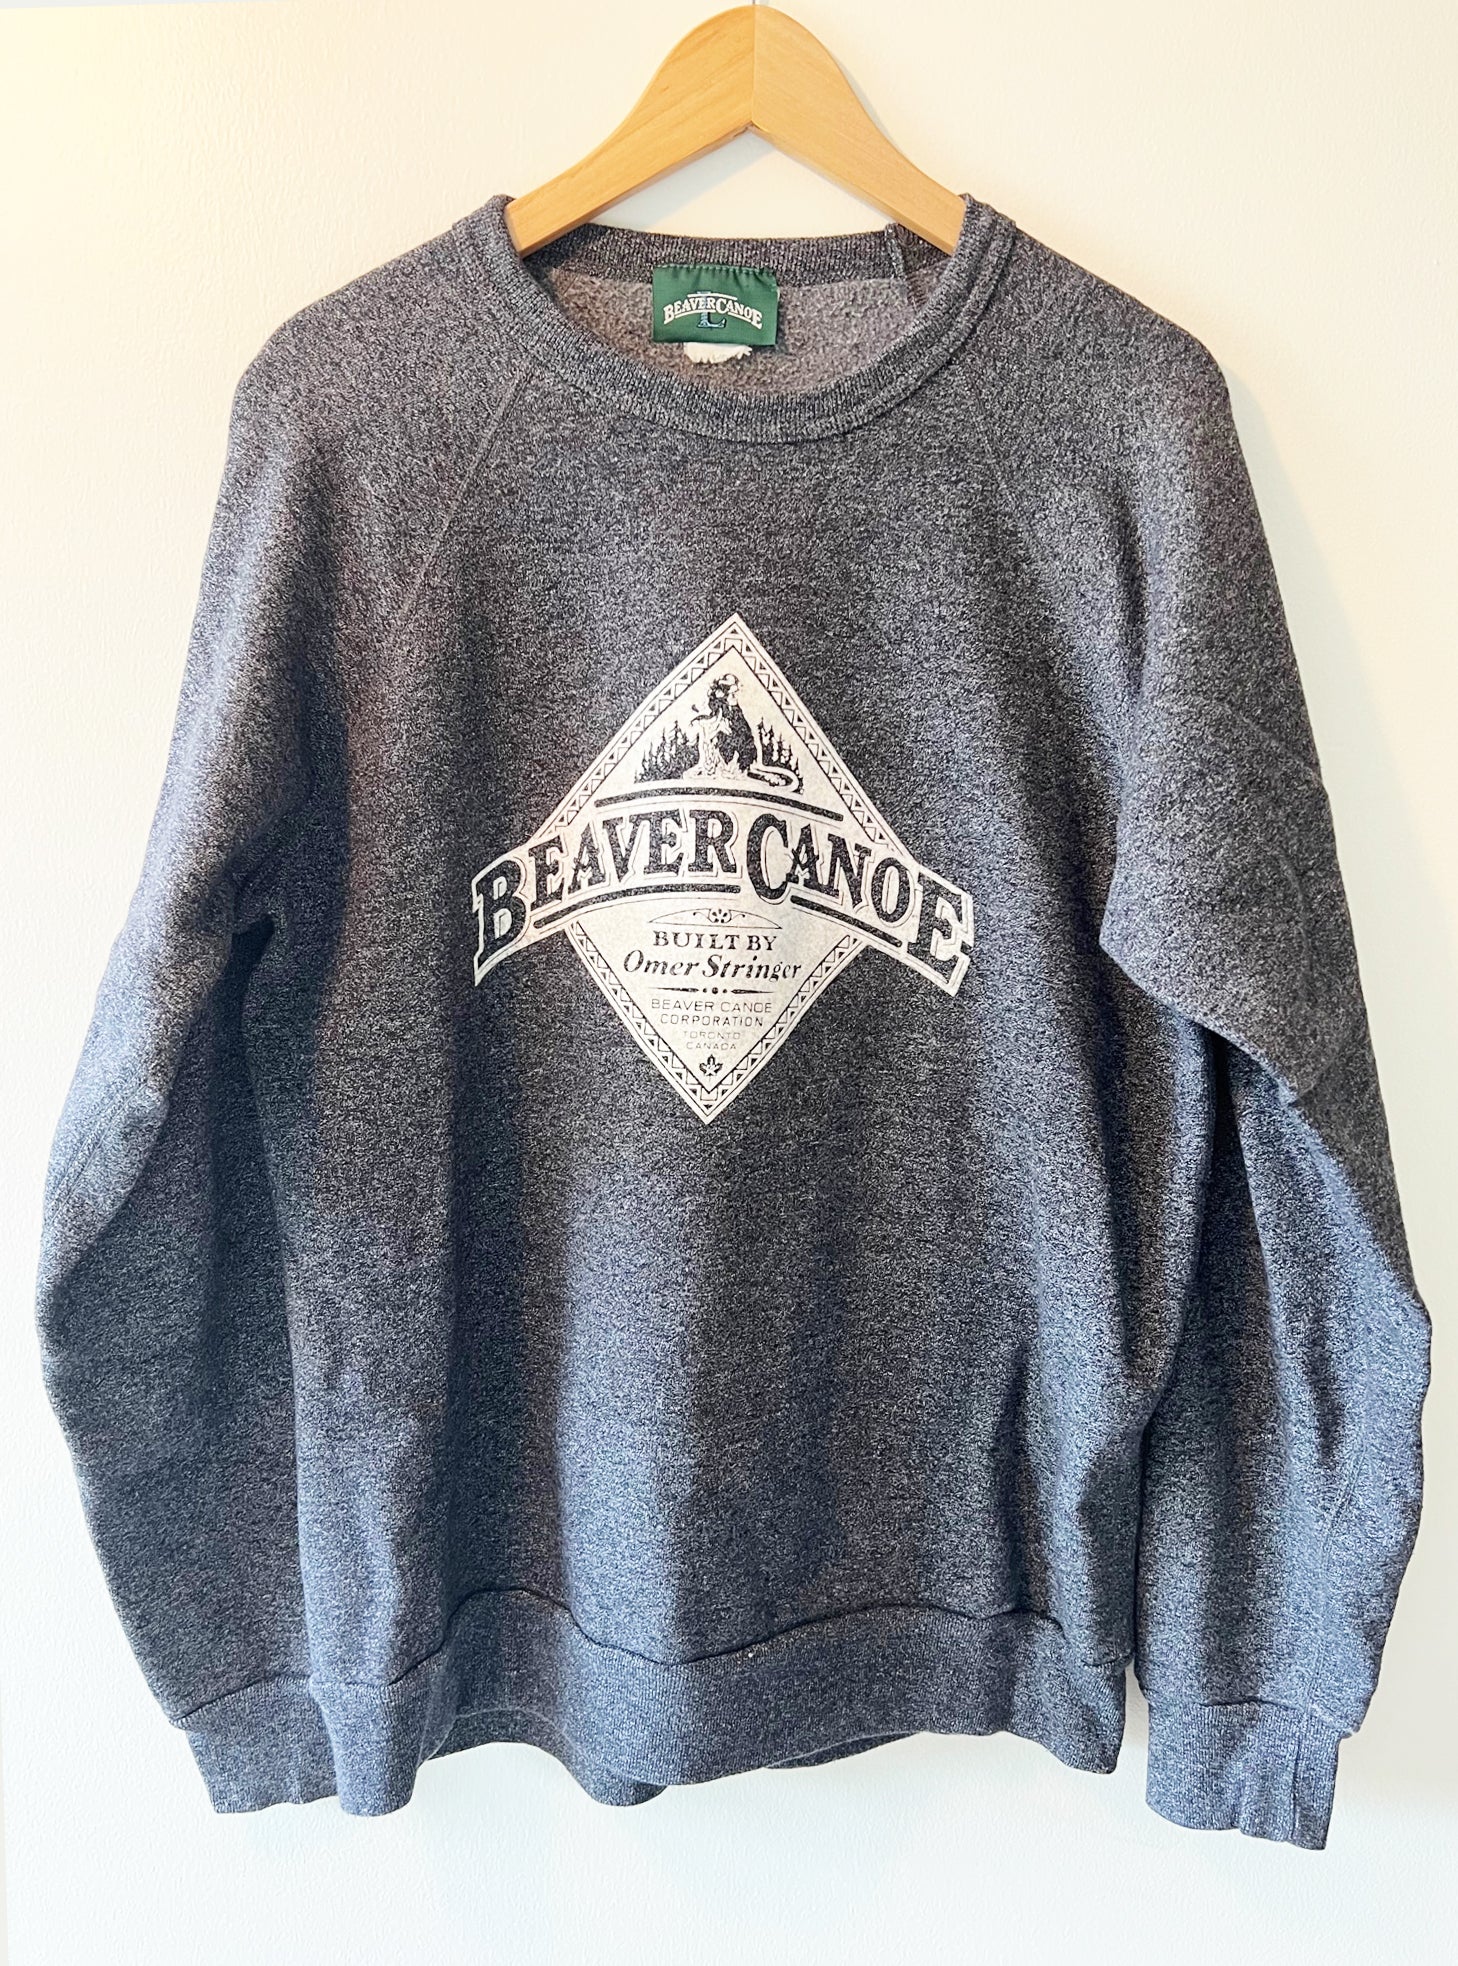 VINTAGE SWEATSHIRT – vintage sweatshirt